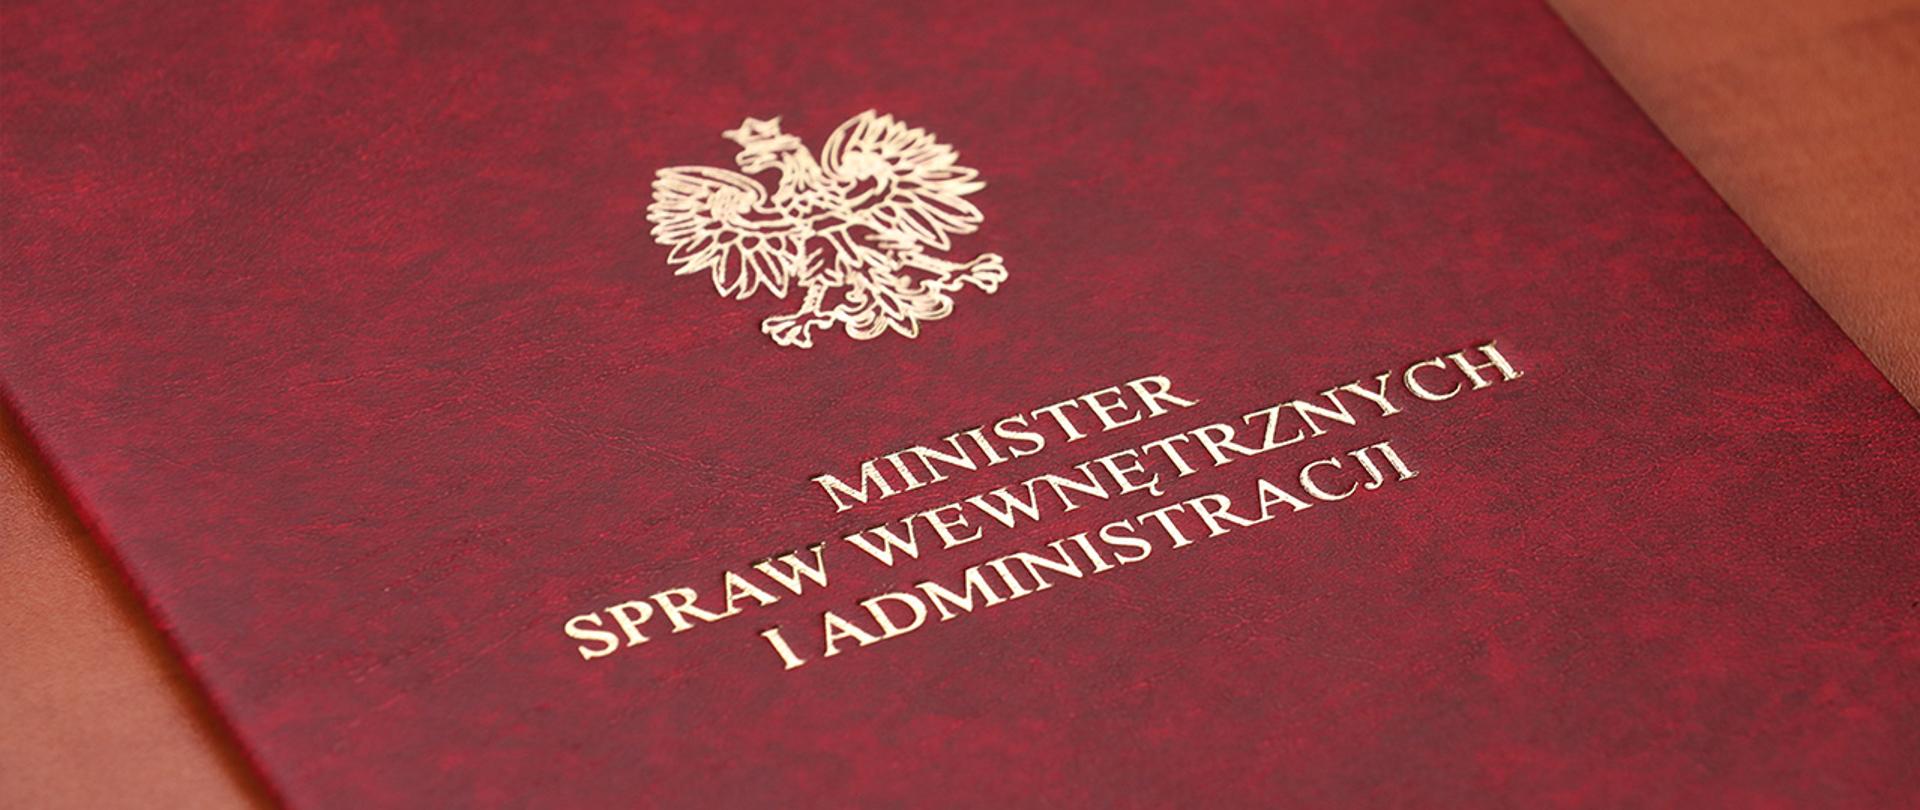 Teczka MSWiA z motywem orła z Godła RP oraz podpisem "Minister spraw wewnętrznych i administracji"